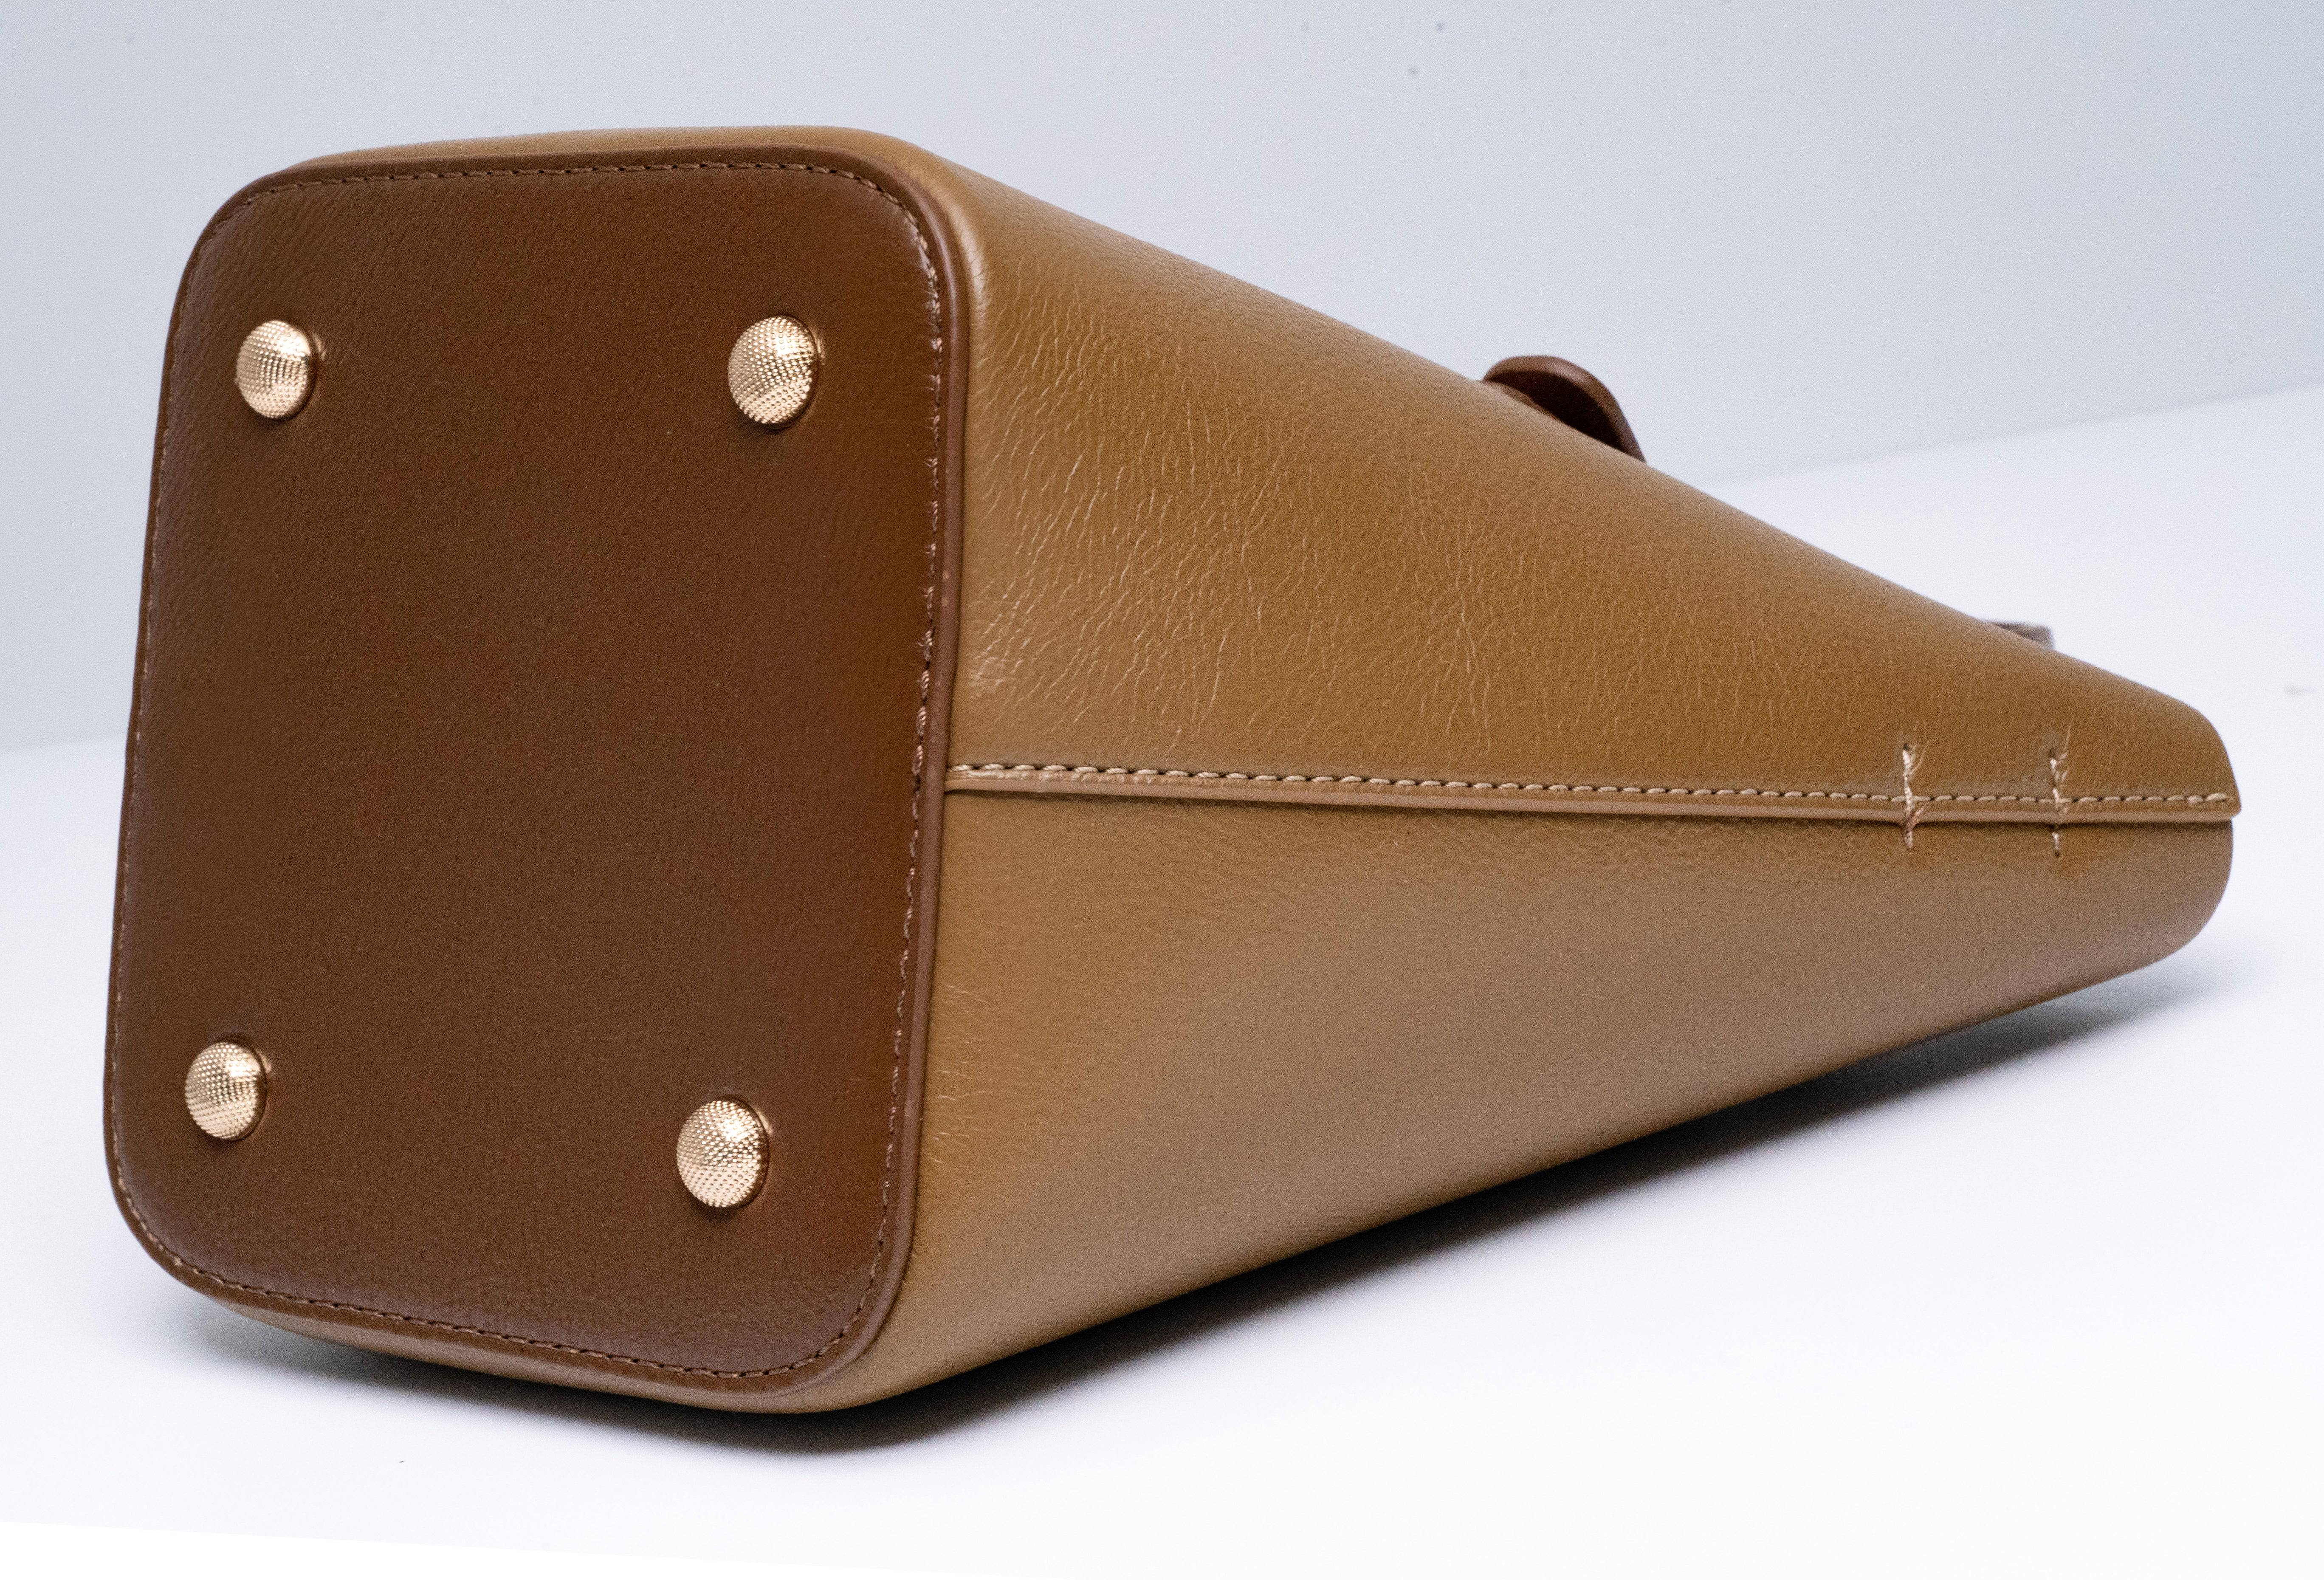 حقيبة باللون العنابى كبيرة الحجم والسعة بتفاصيل بسيطة وأنيقة. - KSA